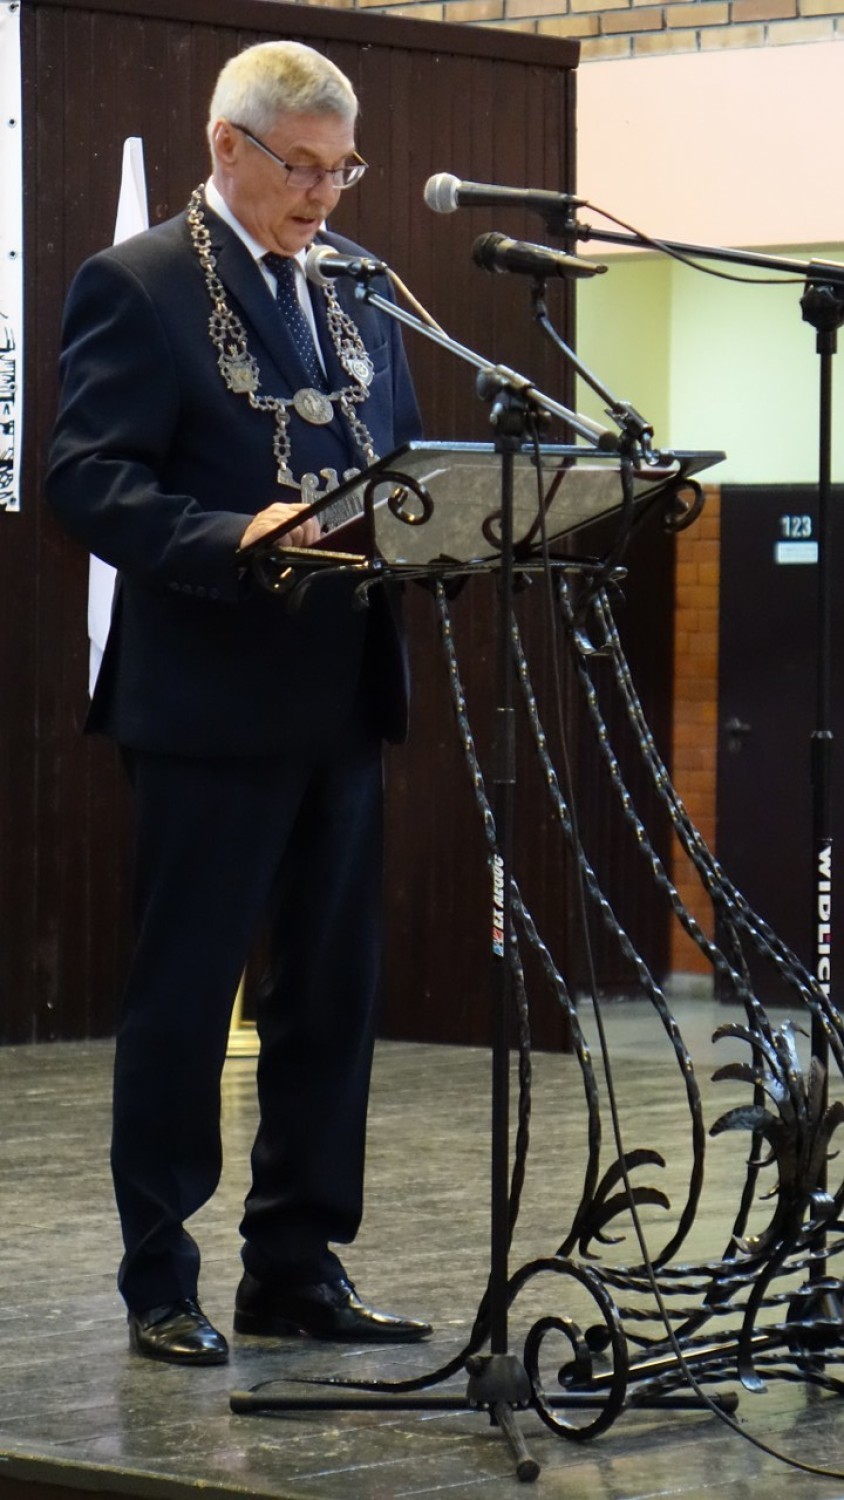 Uroczysta sesja rady miejskiej w Obornikach. Wręczono medal Zasłużony dla Zemi Obornickiej